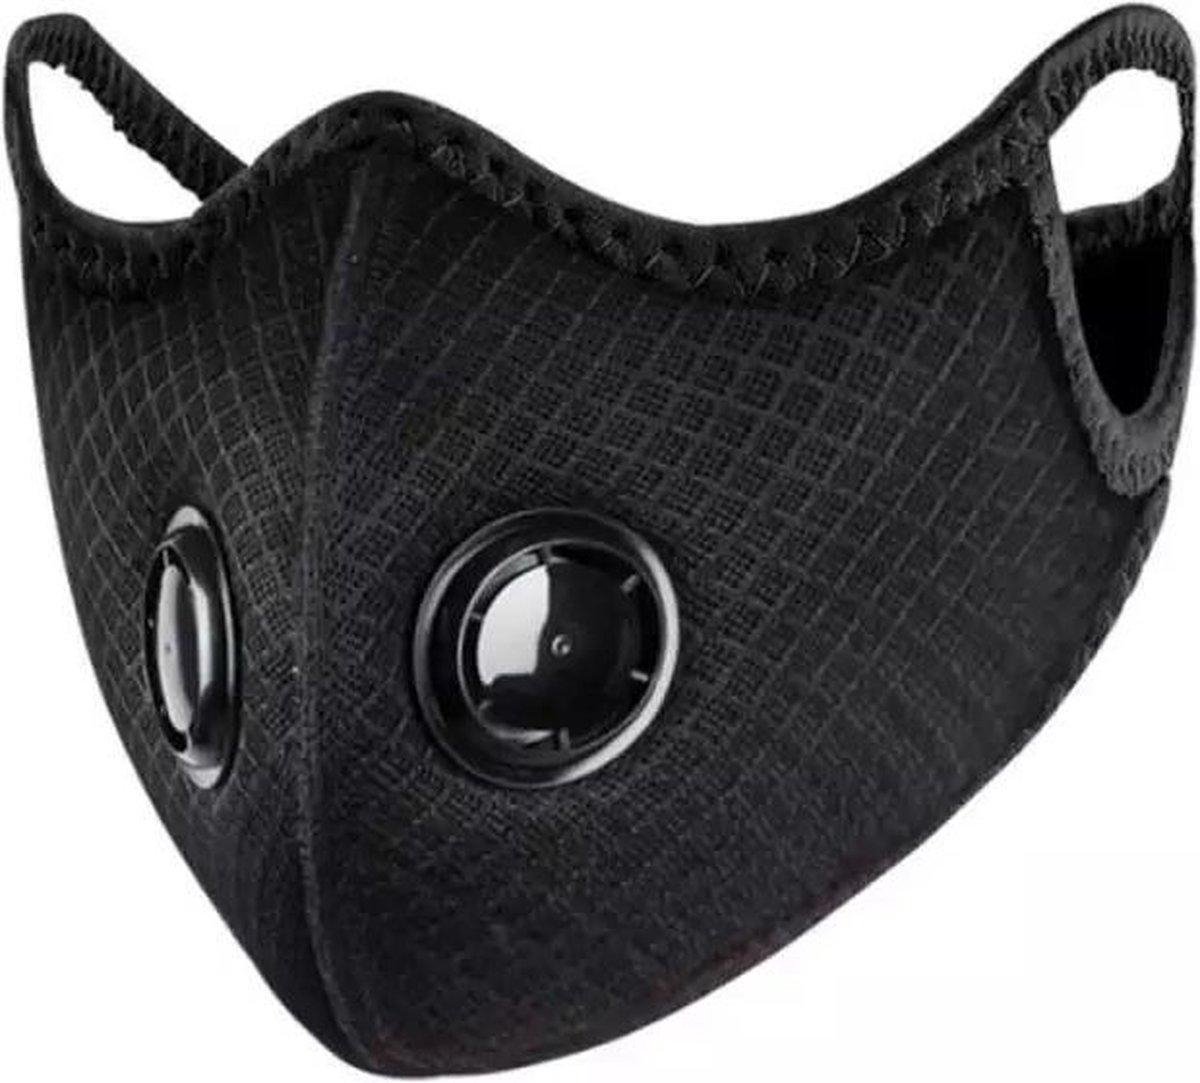 Trainingsmasker – Mondkapje – Masker met Ventilatie – Deluxe mask - Faas®